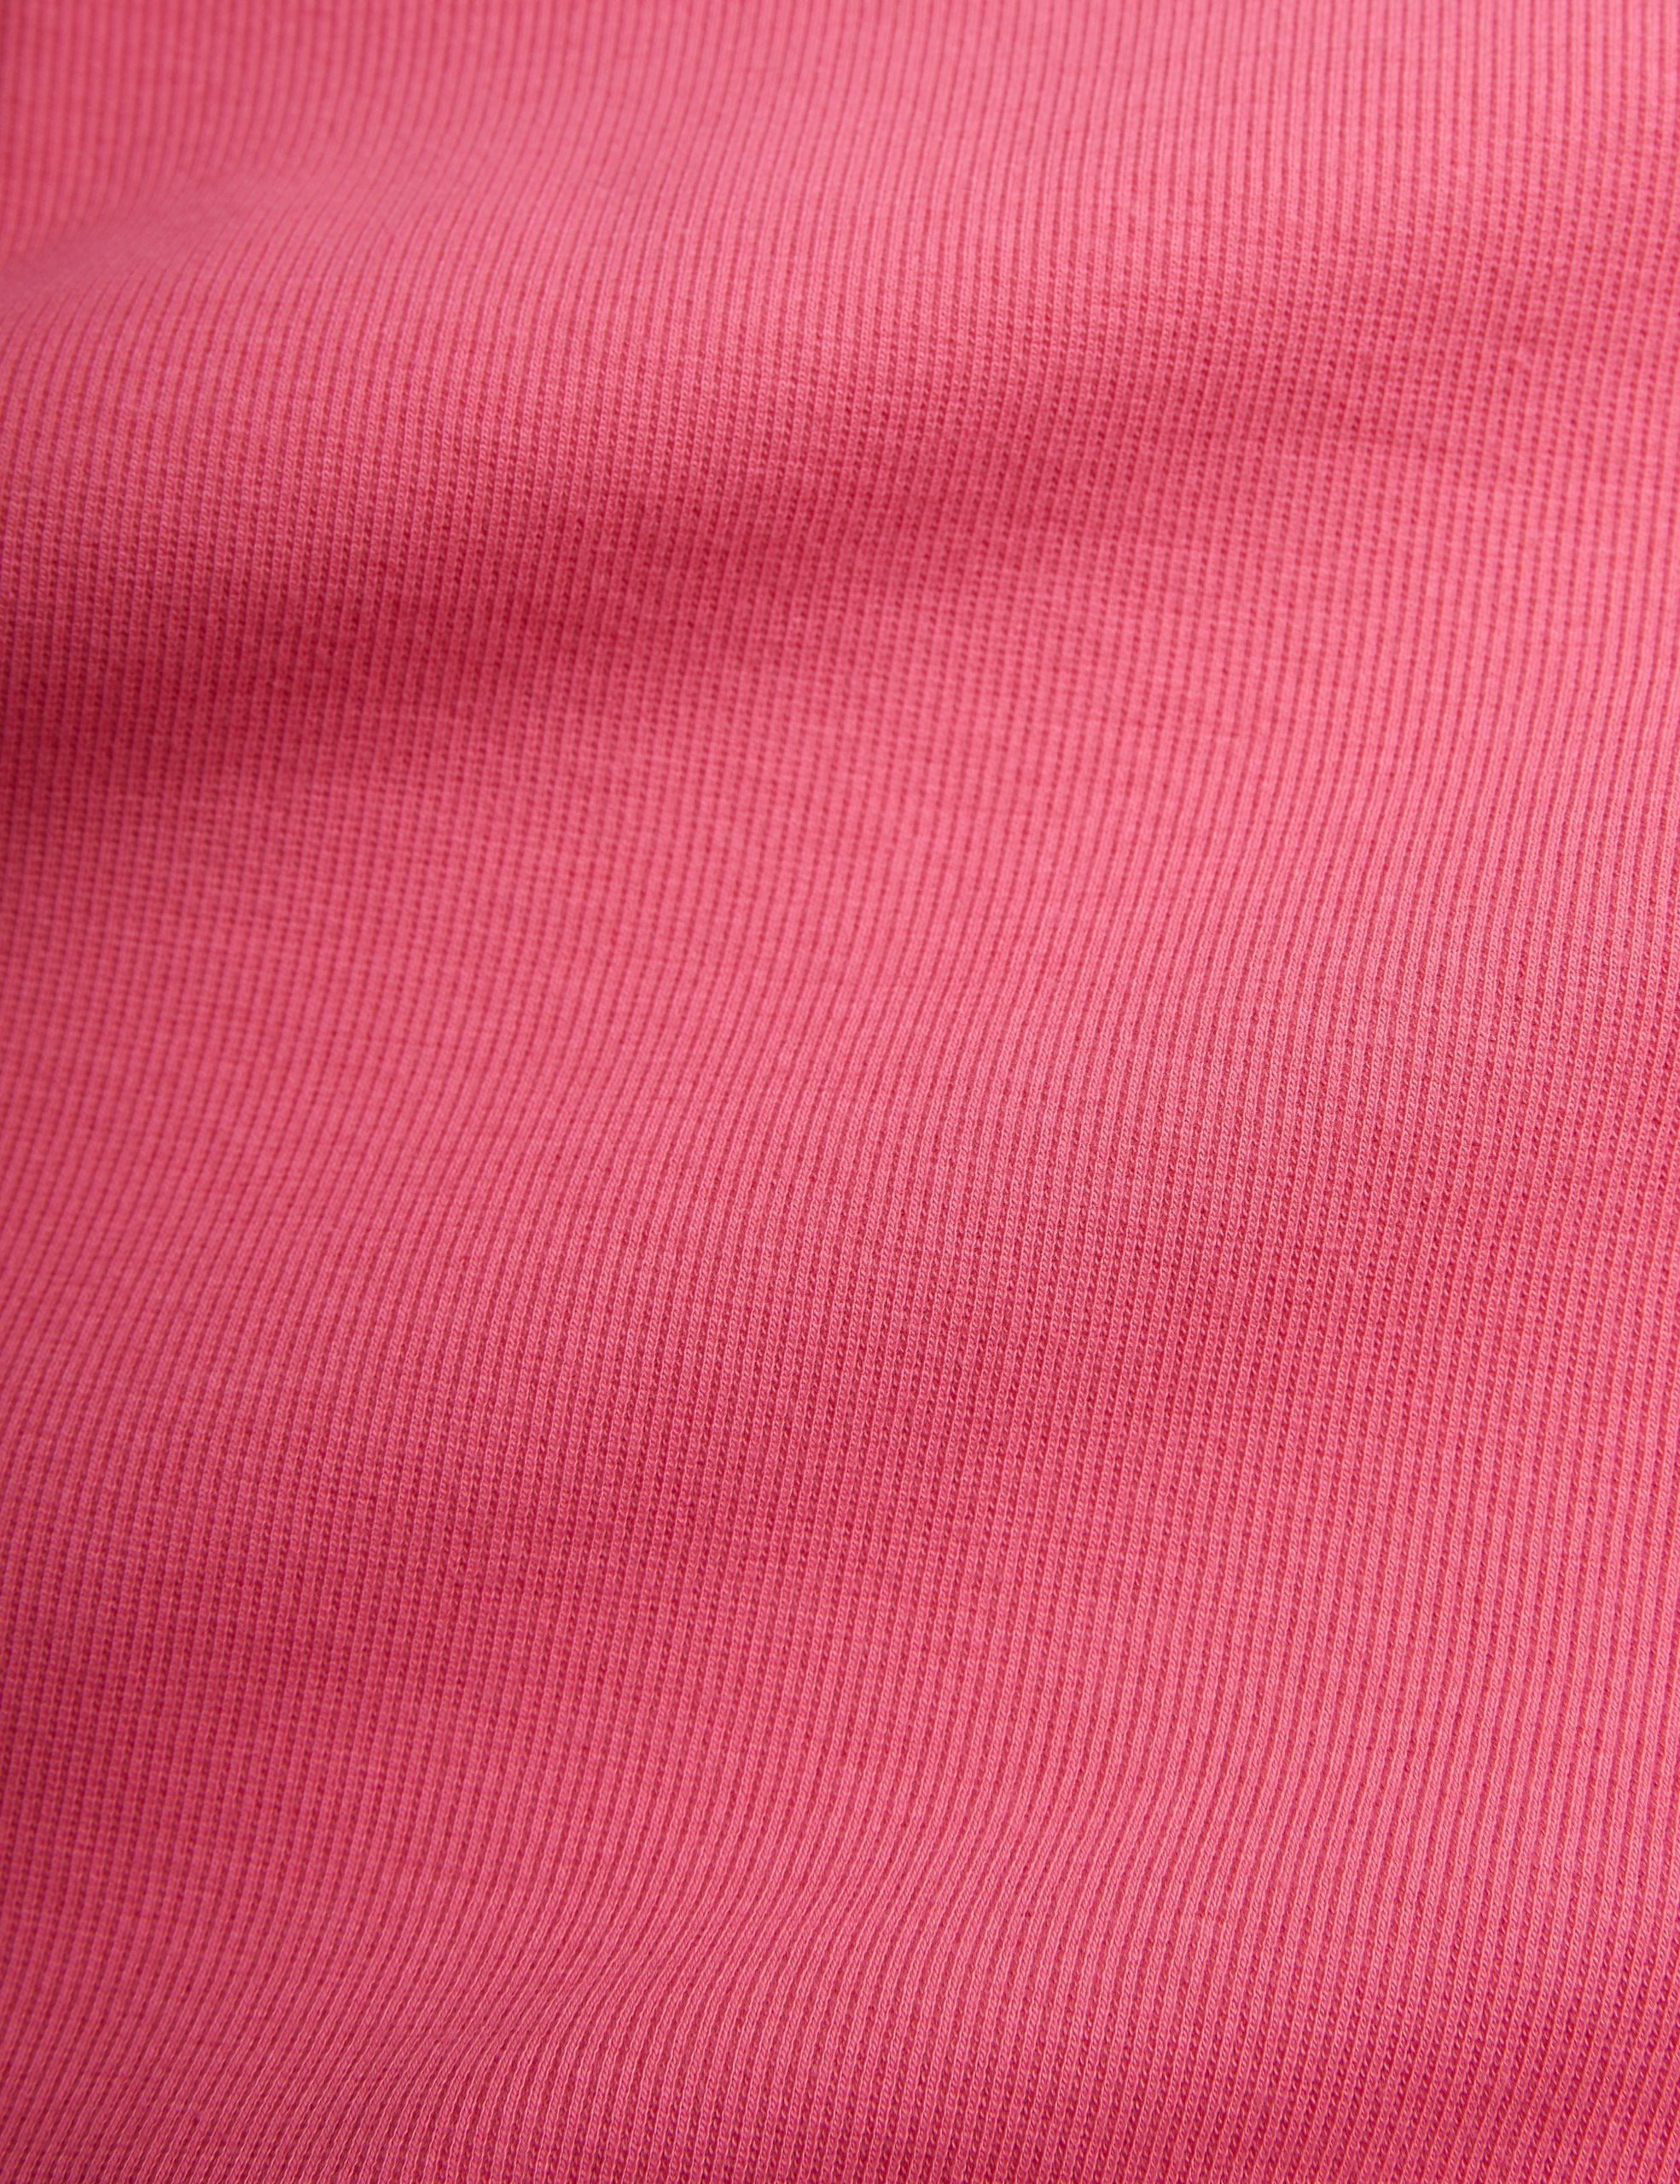 Mini Rodini | Solid rib ls tee Pink